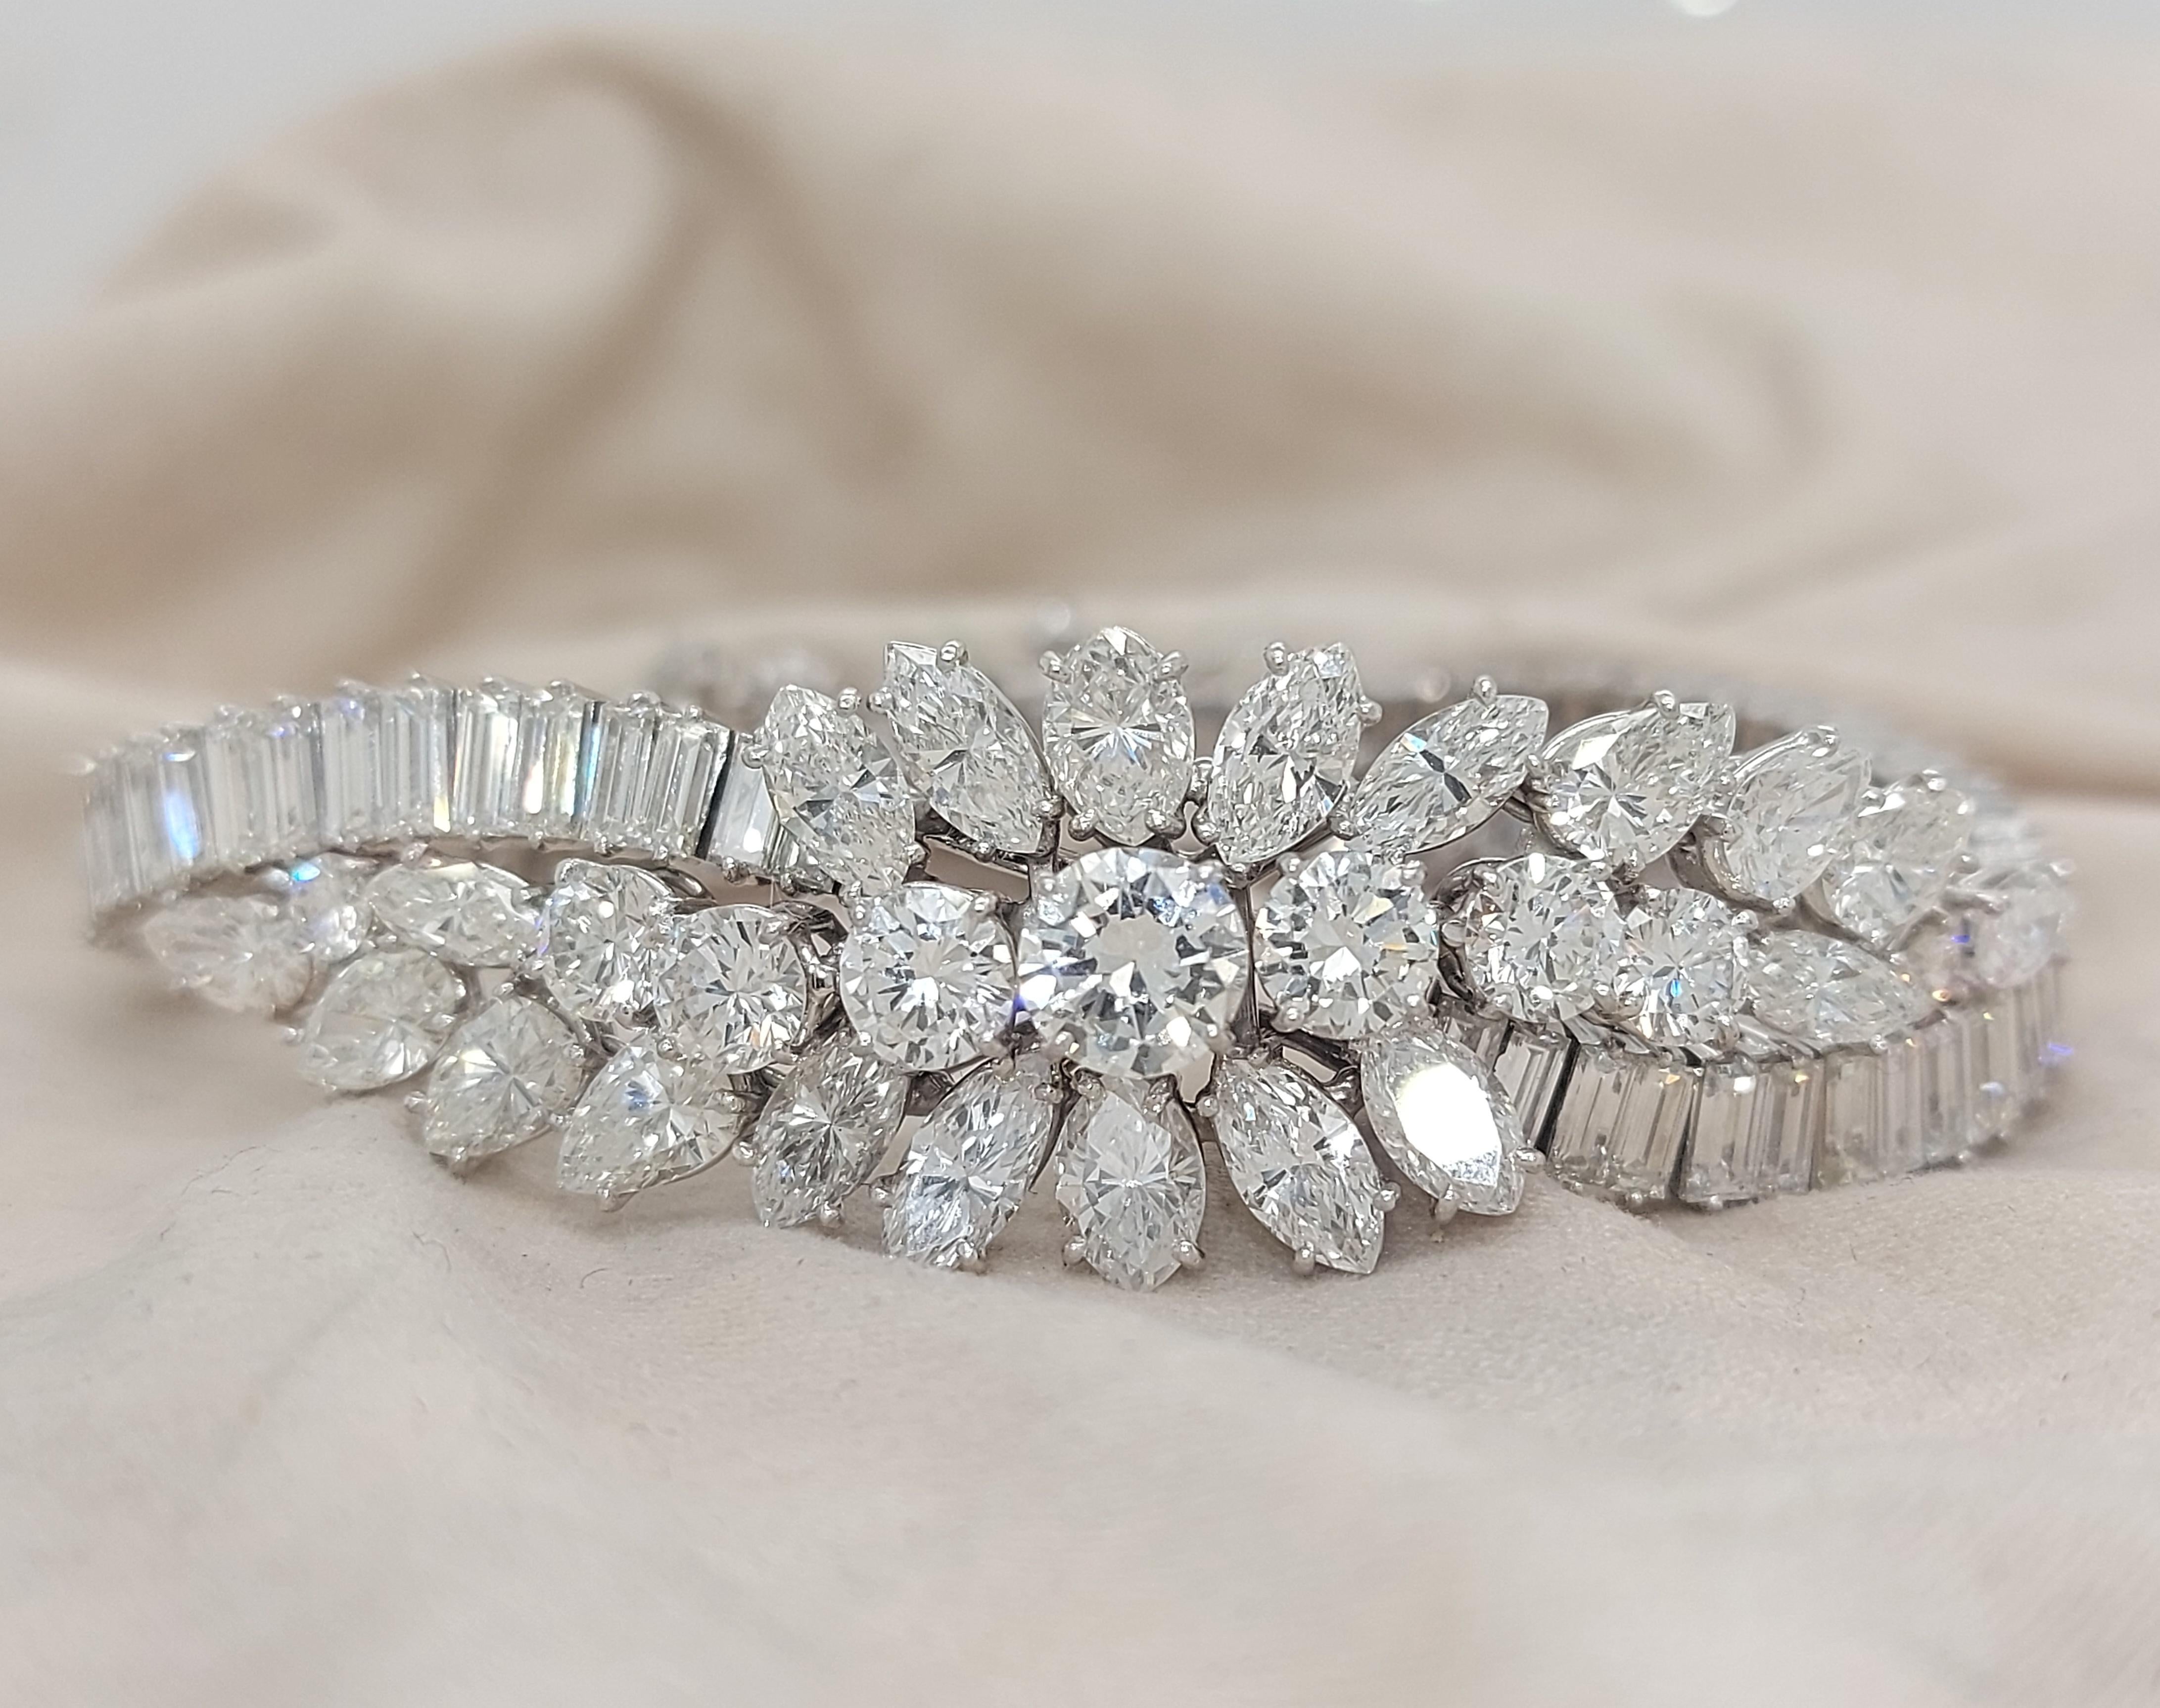 Platin Asprey & Co Diamant-Armband  speziell für die Königin von Seiner Majestät Qaboos Bin Said, dem Sultan von Oman, angefertigt.

Ein einzigartiges, komplett handgefertigtes Diamantarmband mit exklusiver Geschichte!

Qaboos bin Said Al Said war